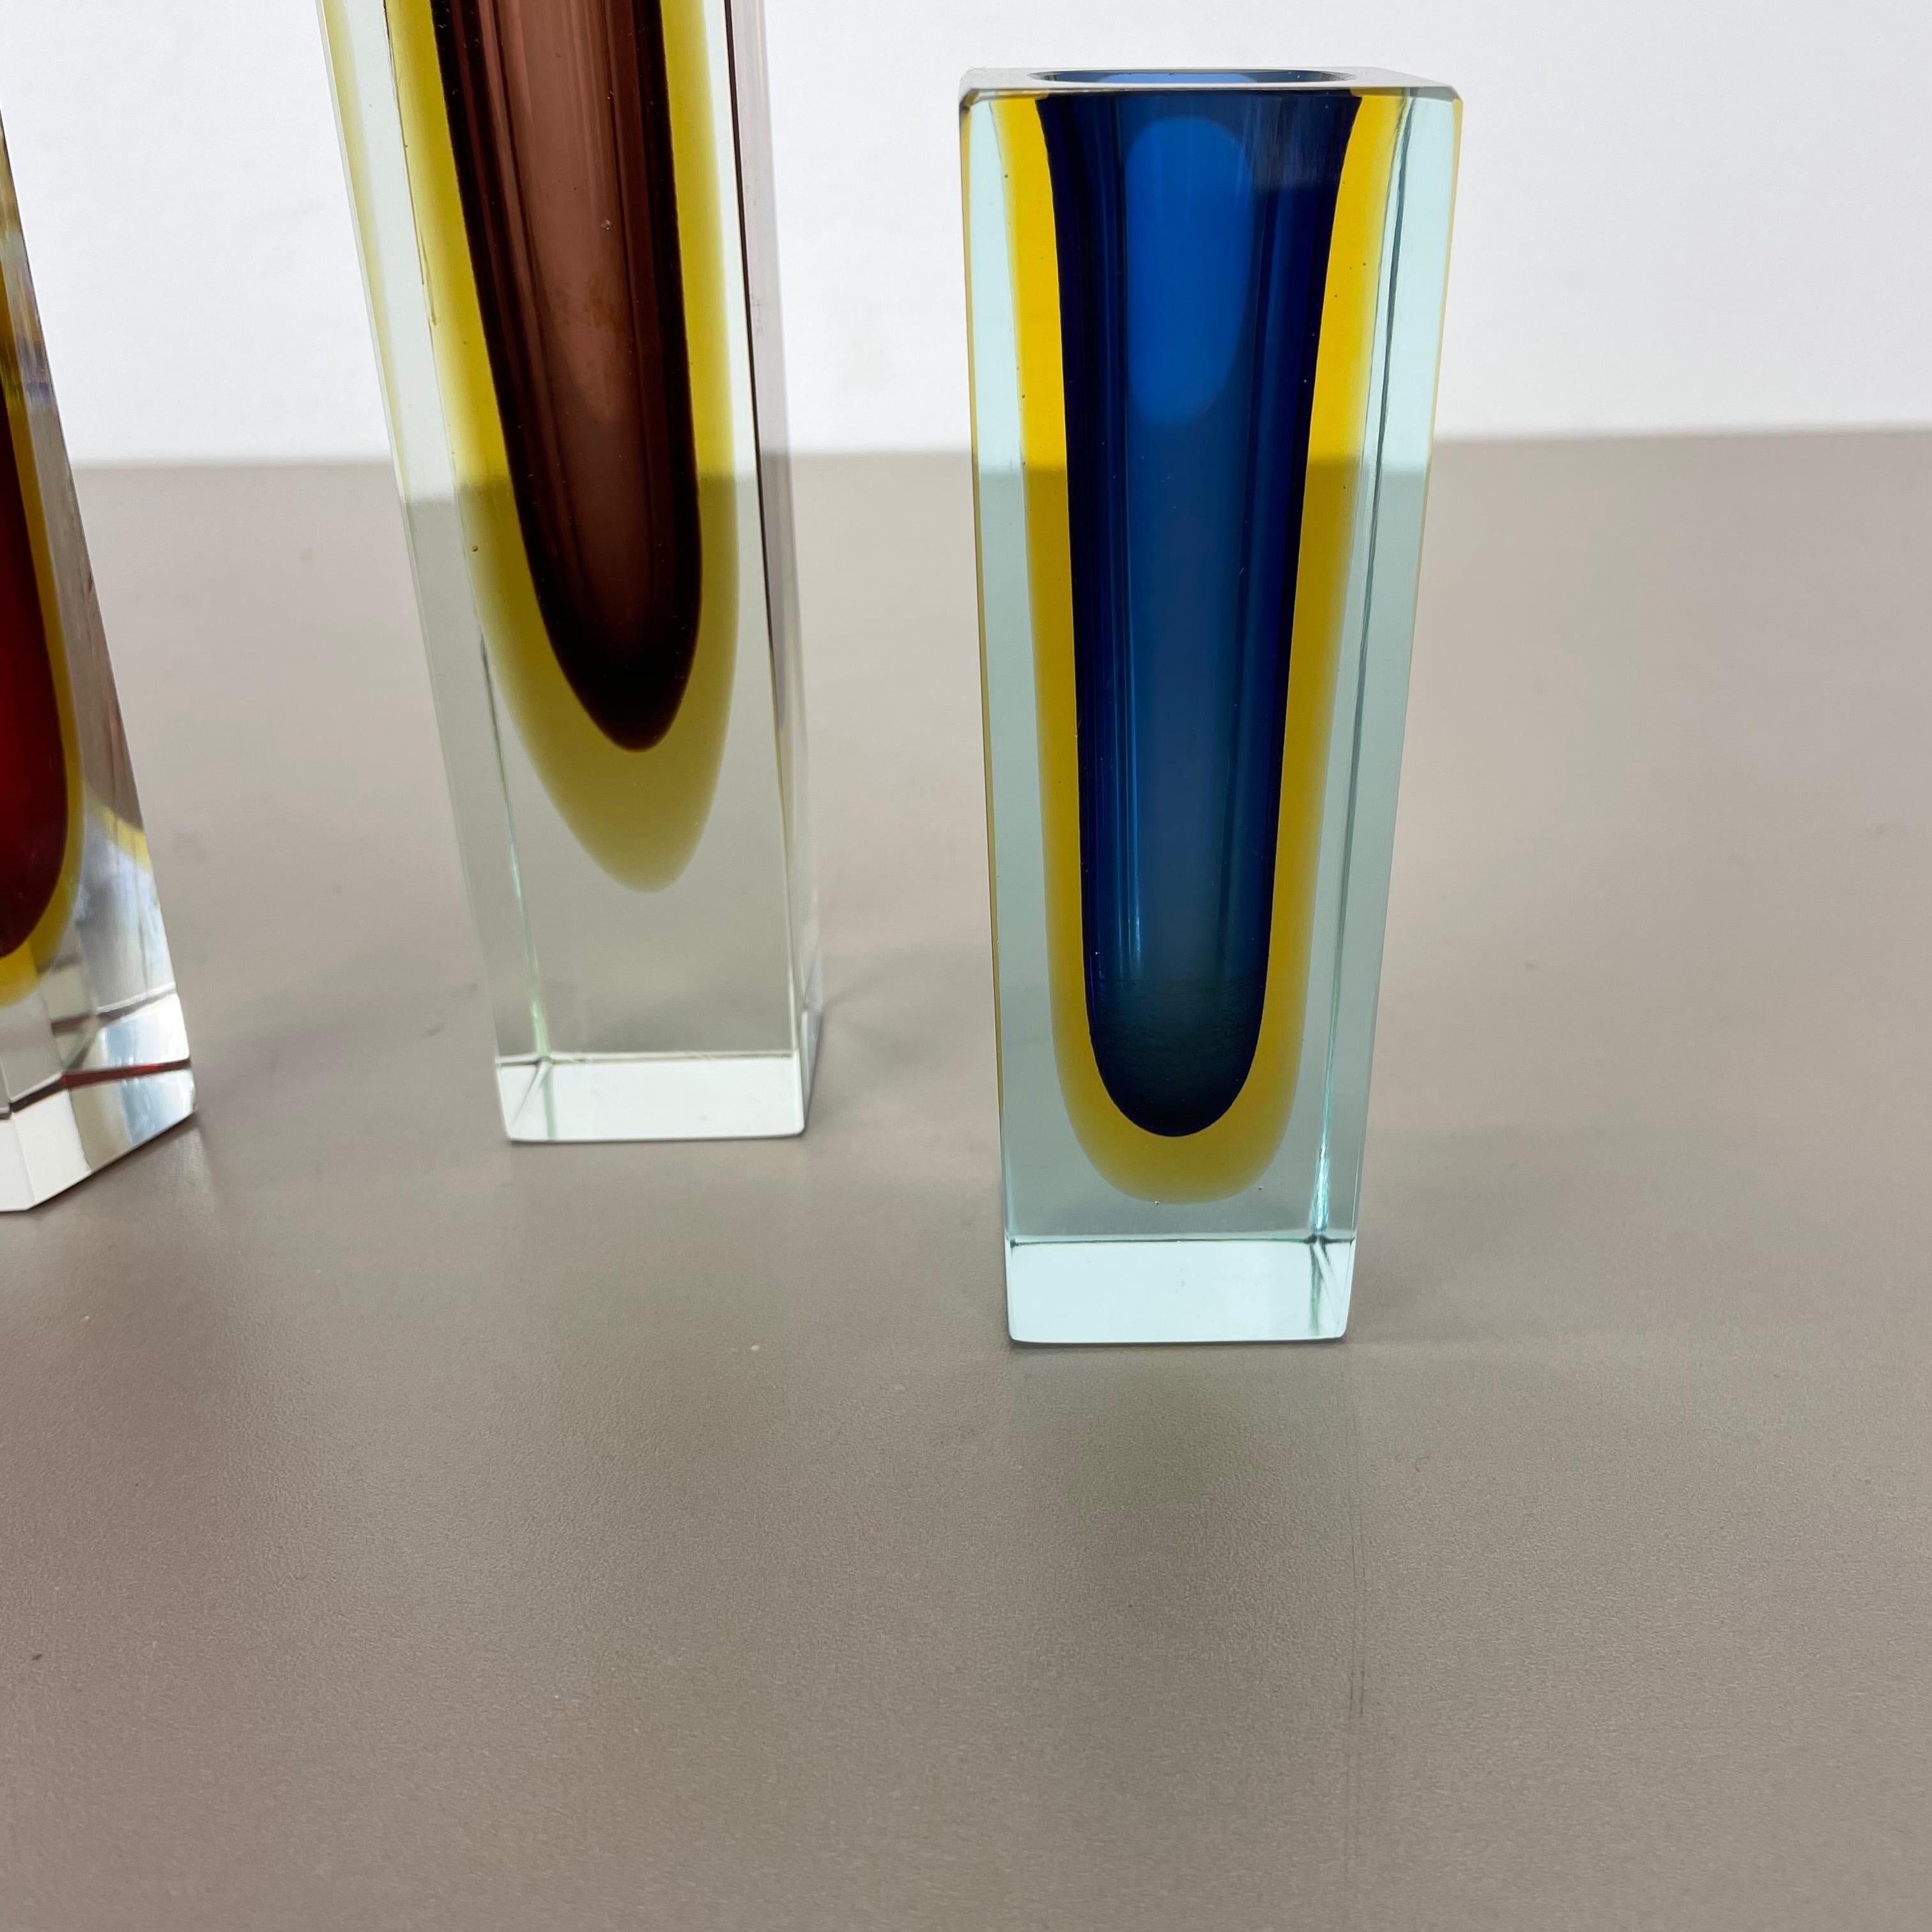 Satz von 4 facettierten Murano Glass Sommerso Vasen attri. Flavio Poli, Italien, 1970er-Jahre (Muranoglas)